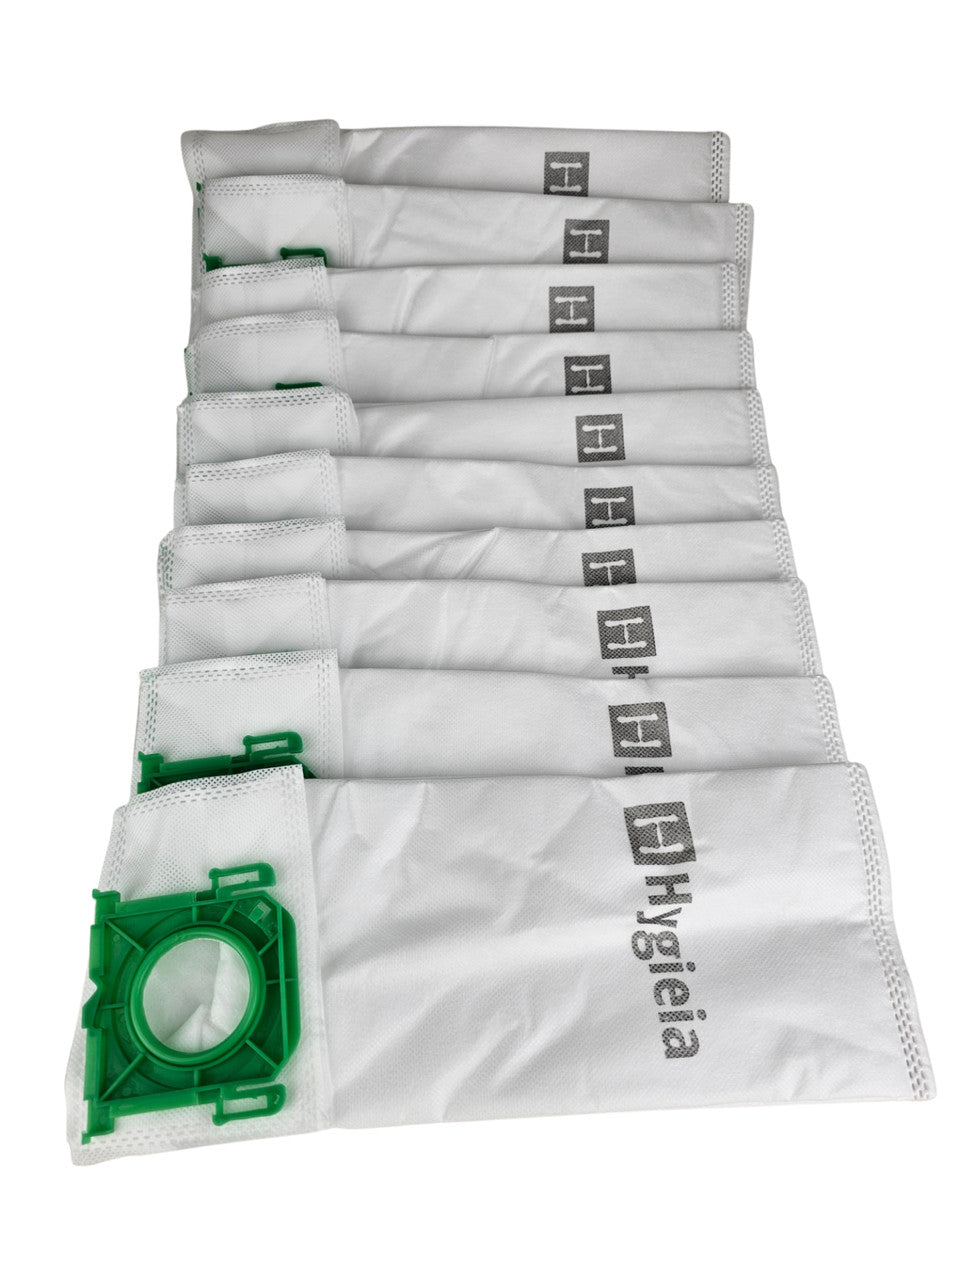 Bags for SEBO X4/X5/X7, XP1/2/3, XP10/XP20/XP30, C3.1, G1/G2, 370/470